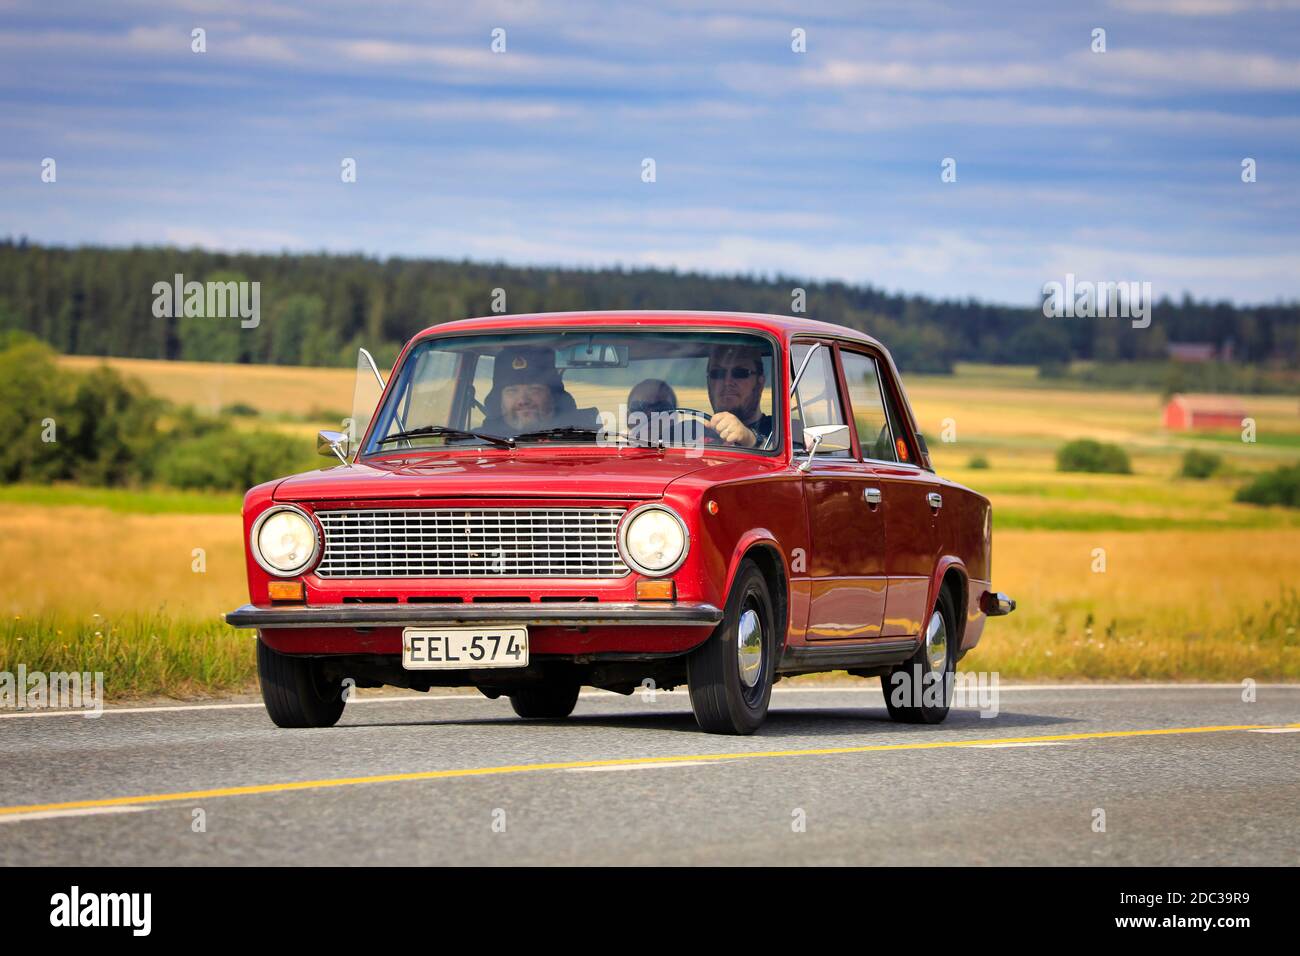 Guida Lada 1200 rossa su crociera Maisemaruise 2019 auto. Lada 1200 è stato prodotto dalla Avtovaz russa nel 1970-88. Vaulammi, Finlandia. 3 agosto 2019. Foto Stock